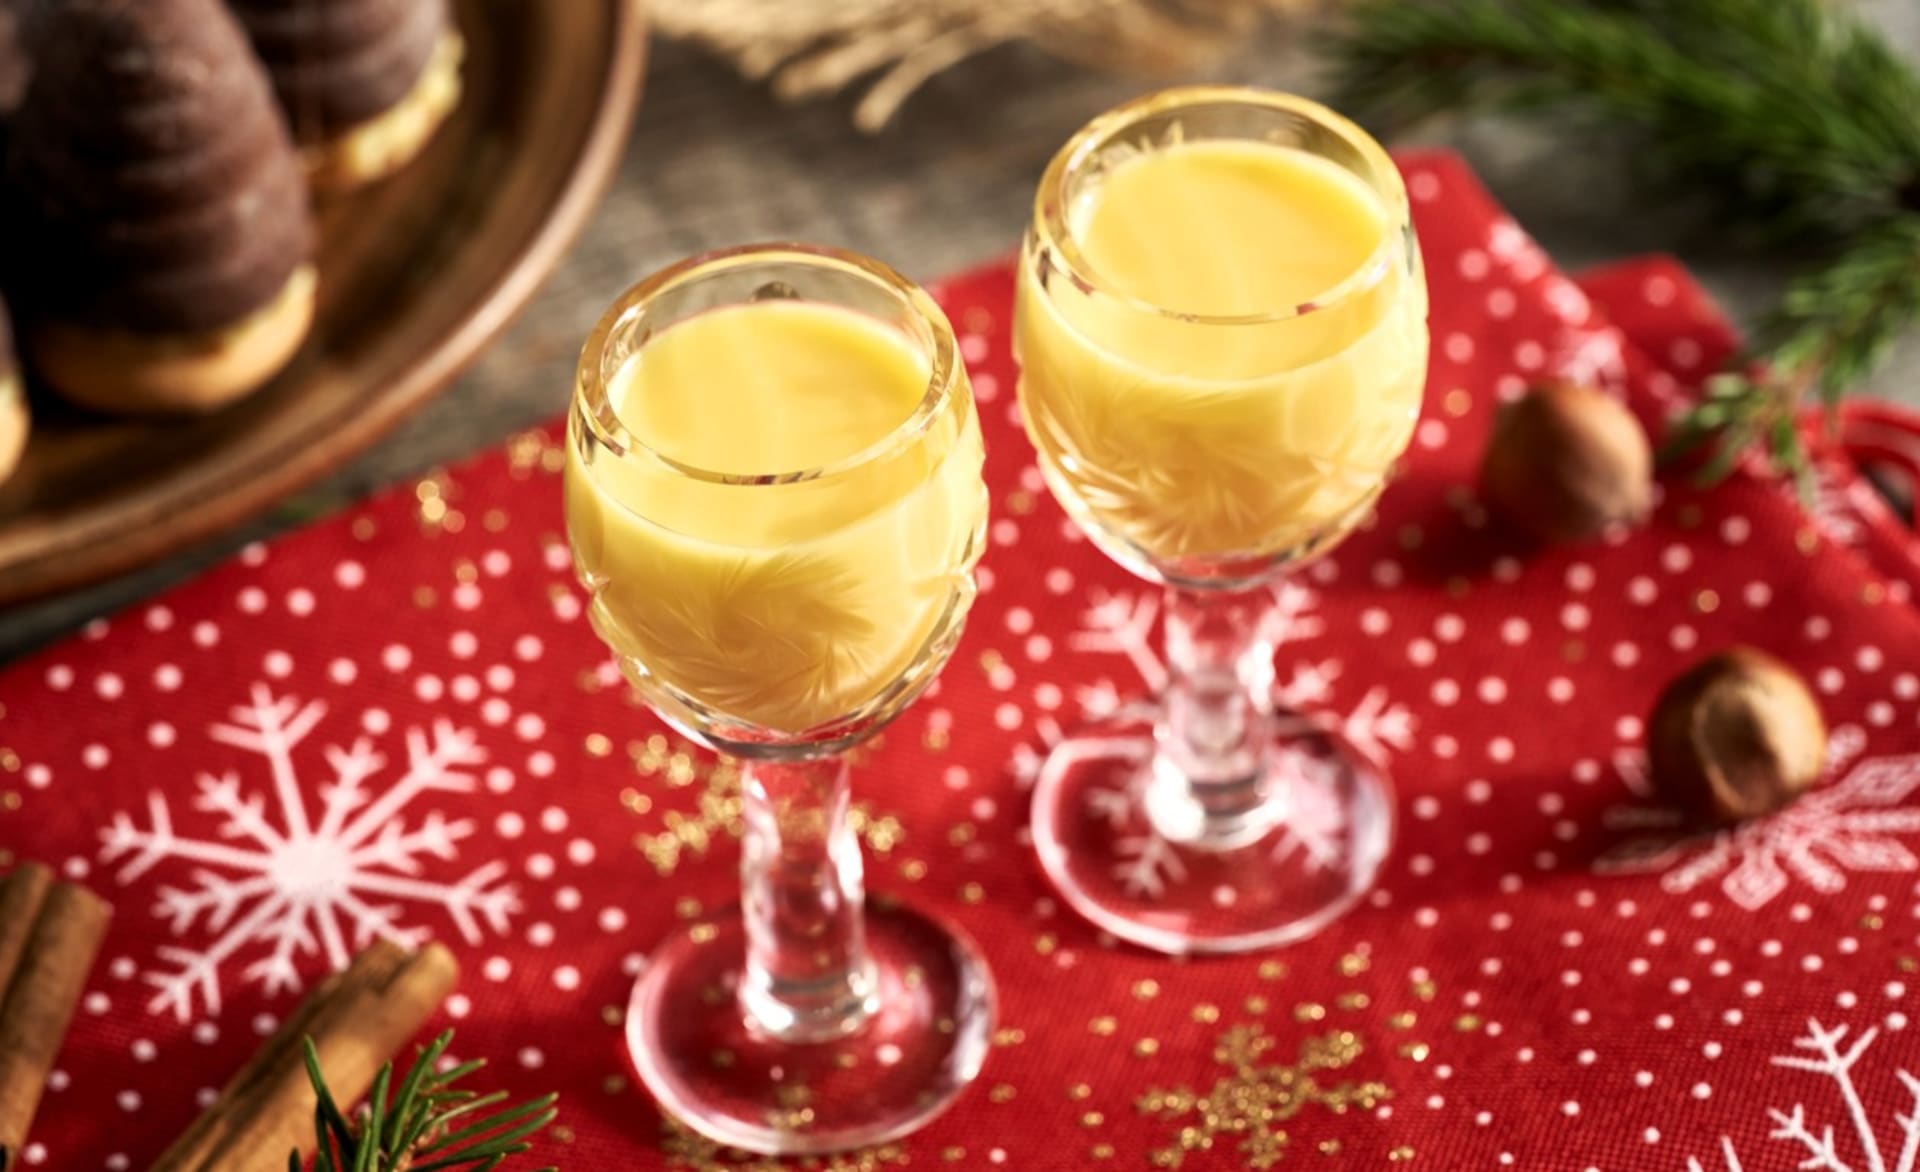 Vánoce bez domácího likéru? Tak to ne! Udělejte si tradiční český vaječňák nebo likér perníkový či mandlový